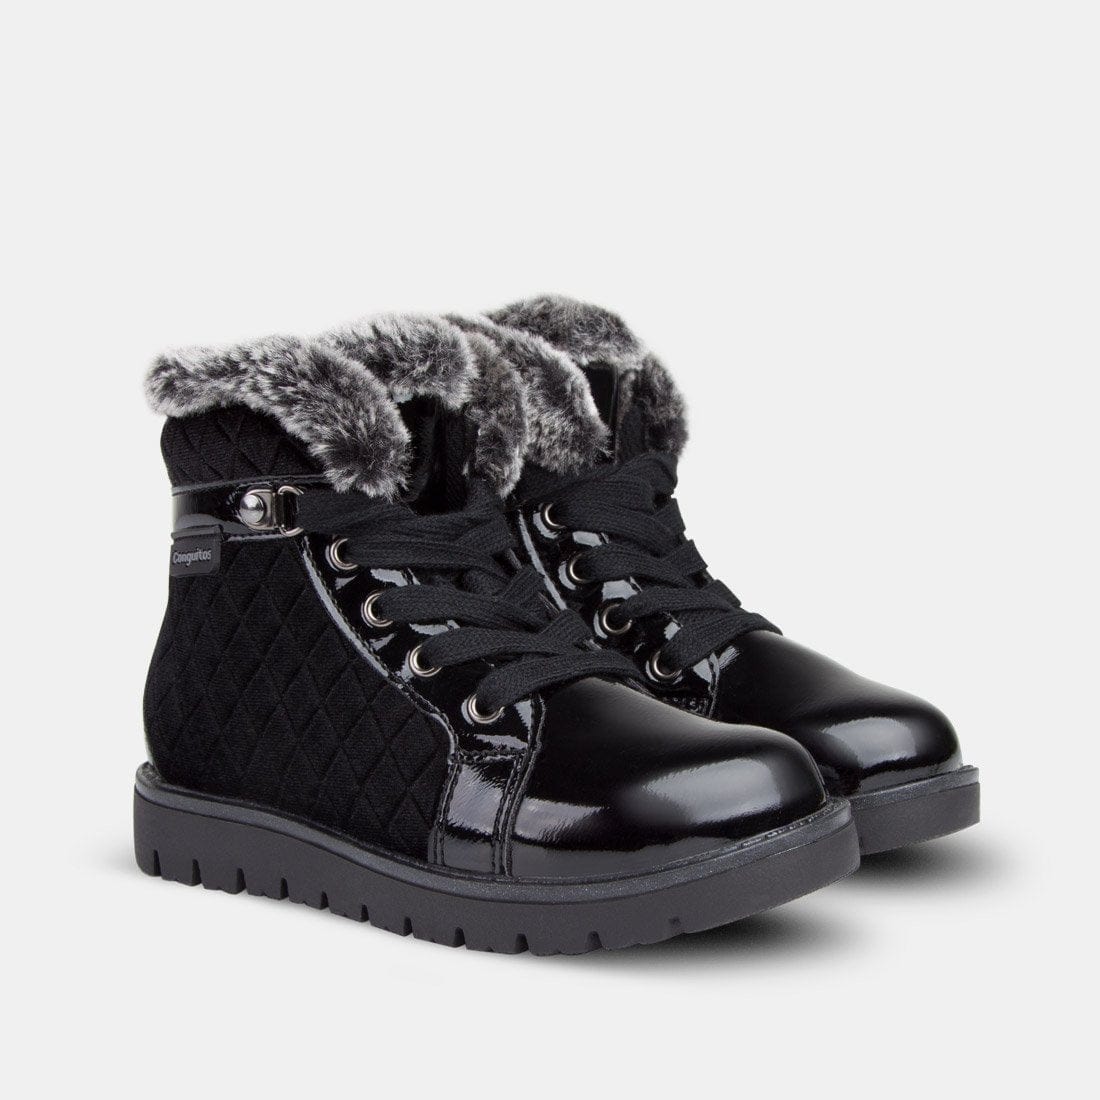 CONGUITOS Shoes Girl's Black Velvet Boots